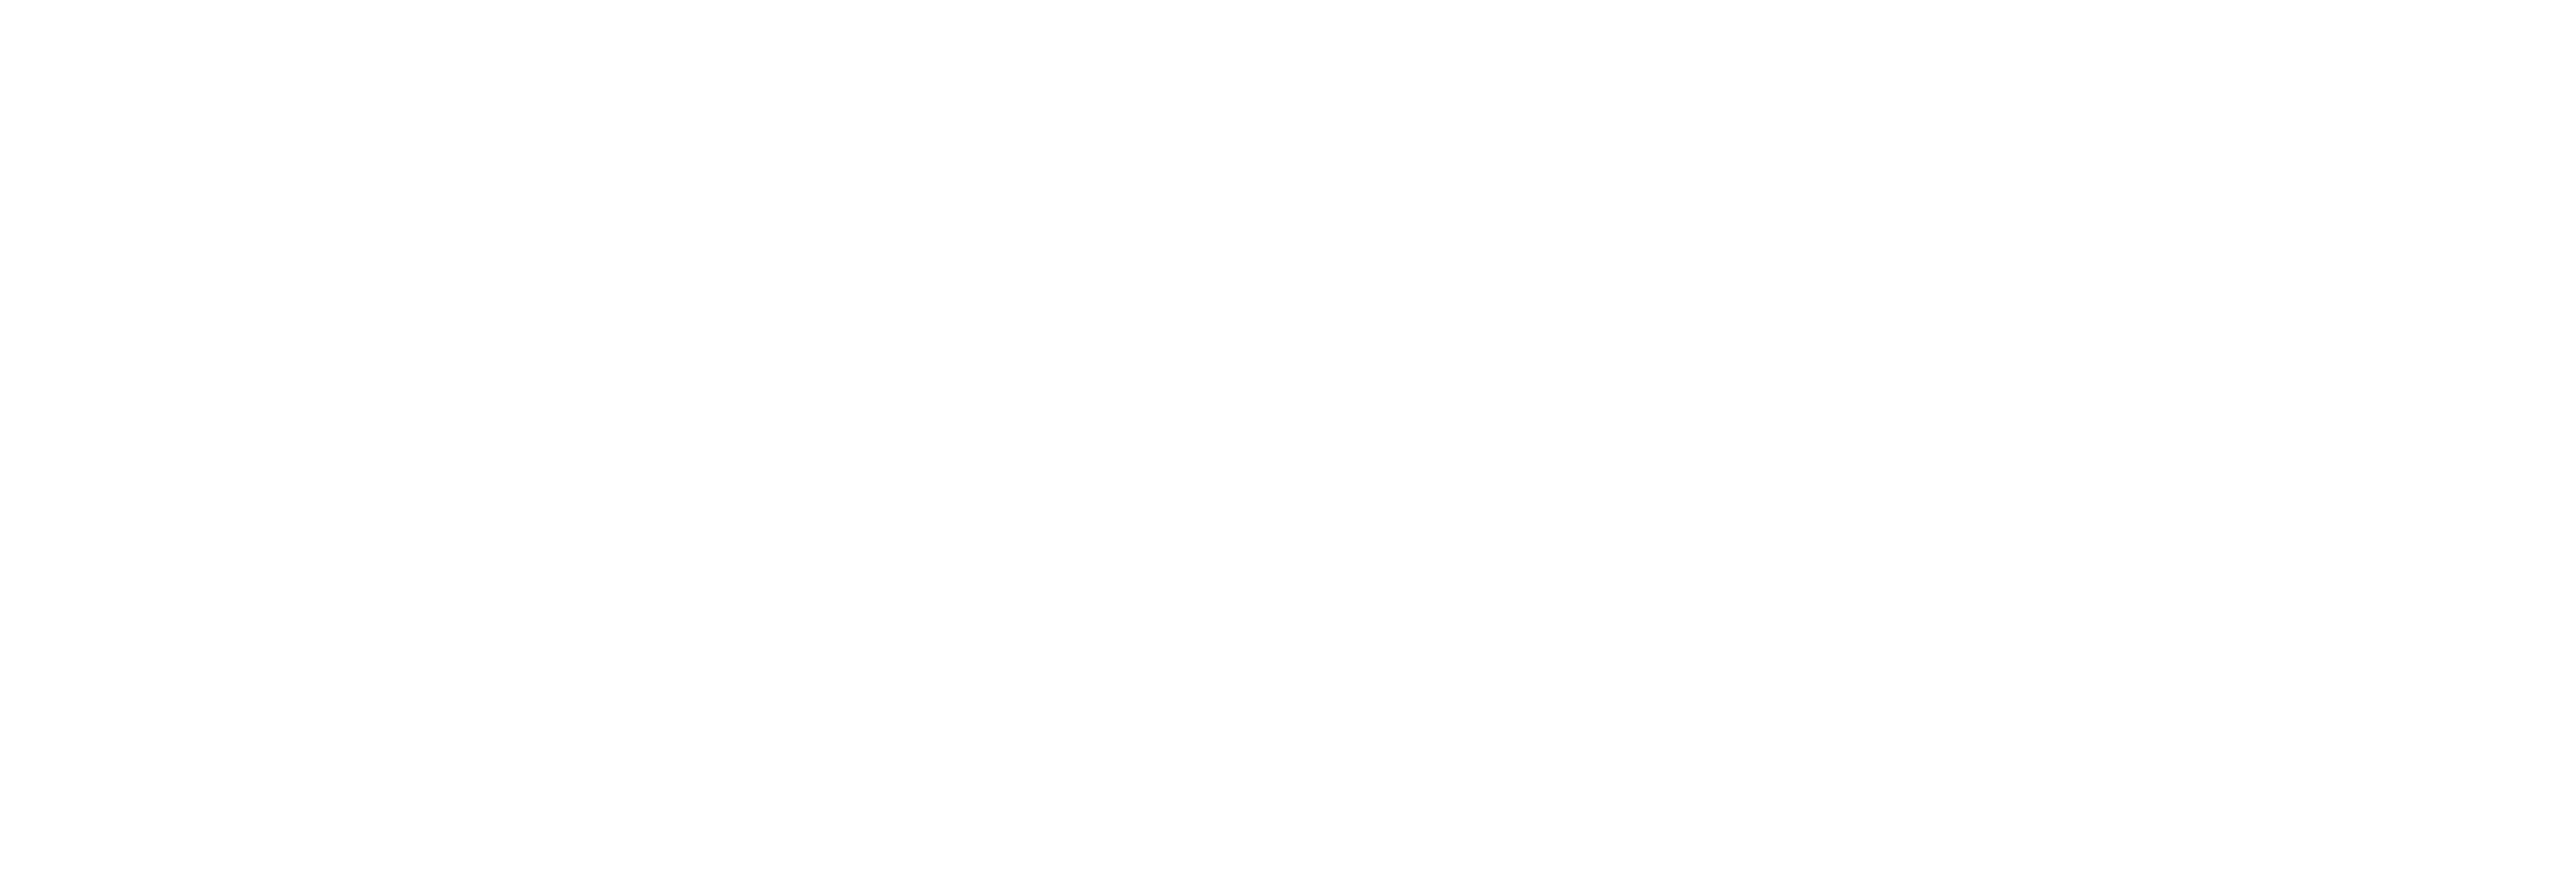 AniCura Jaén Norte Centro Veterinario logo